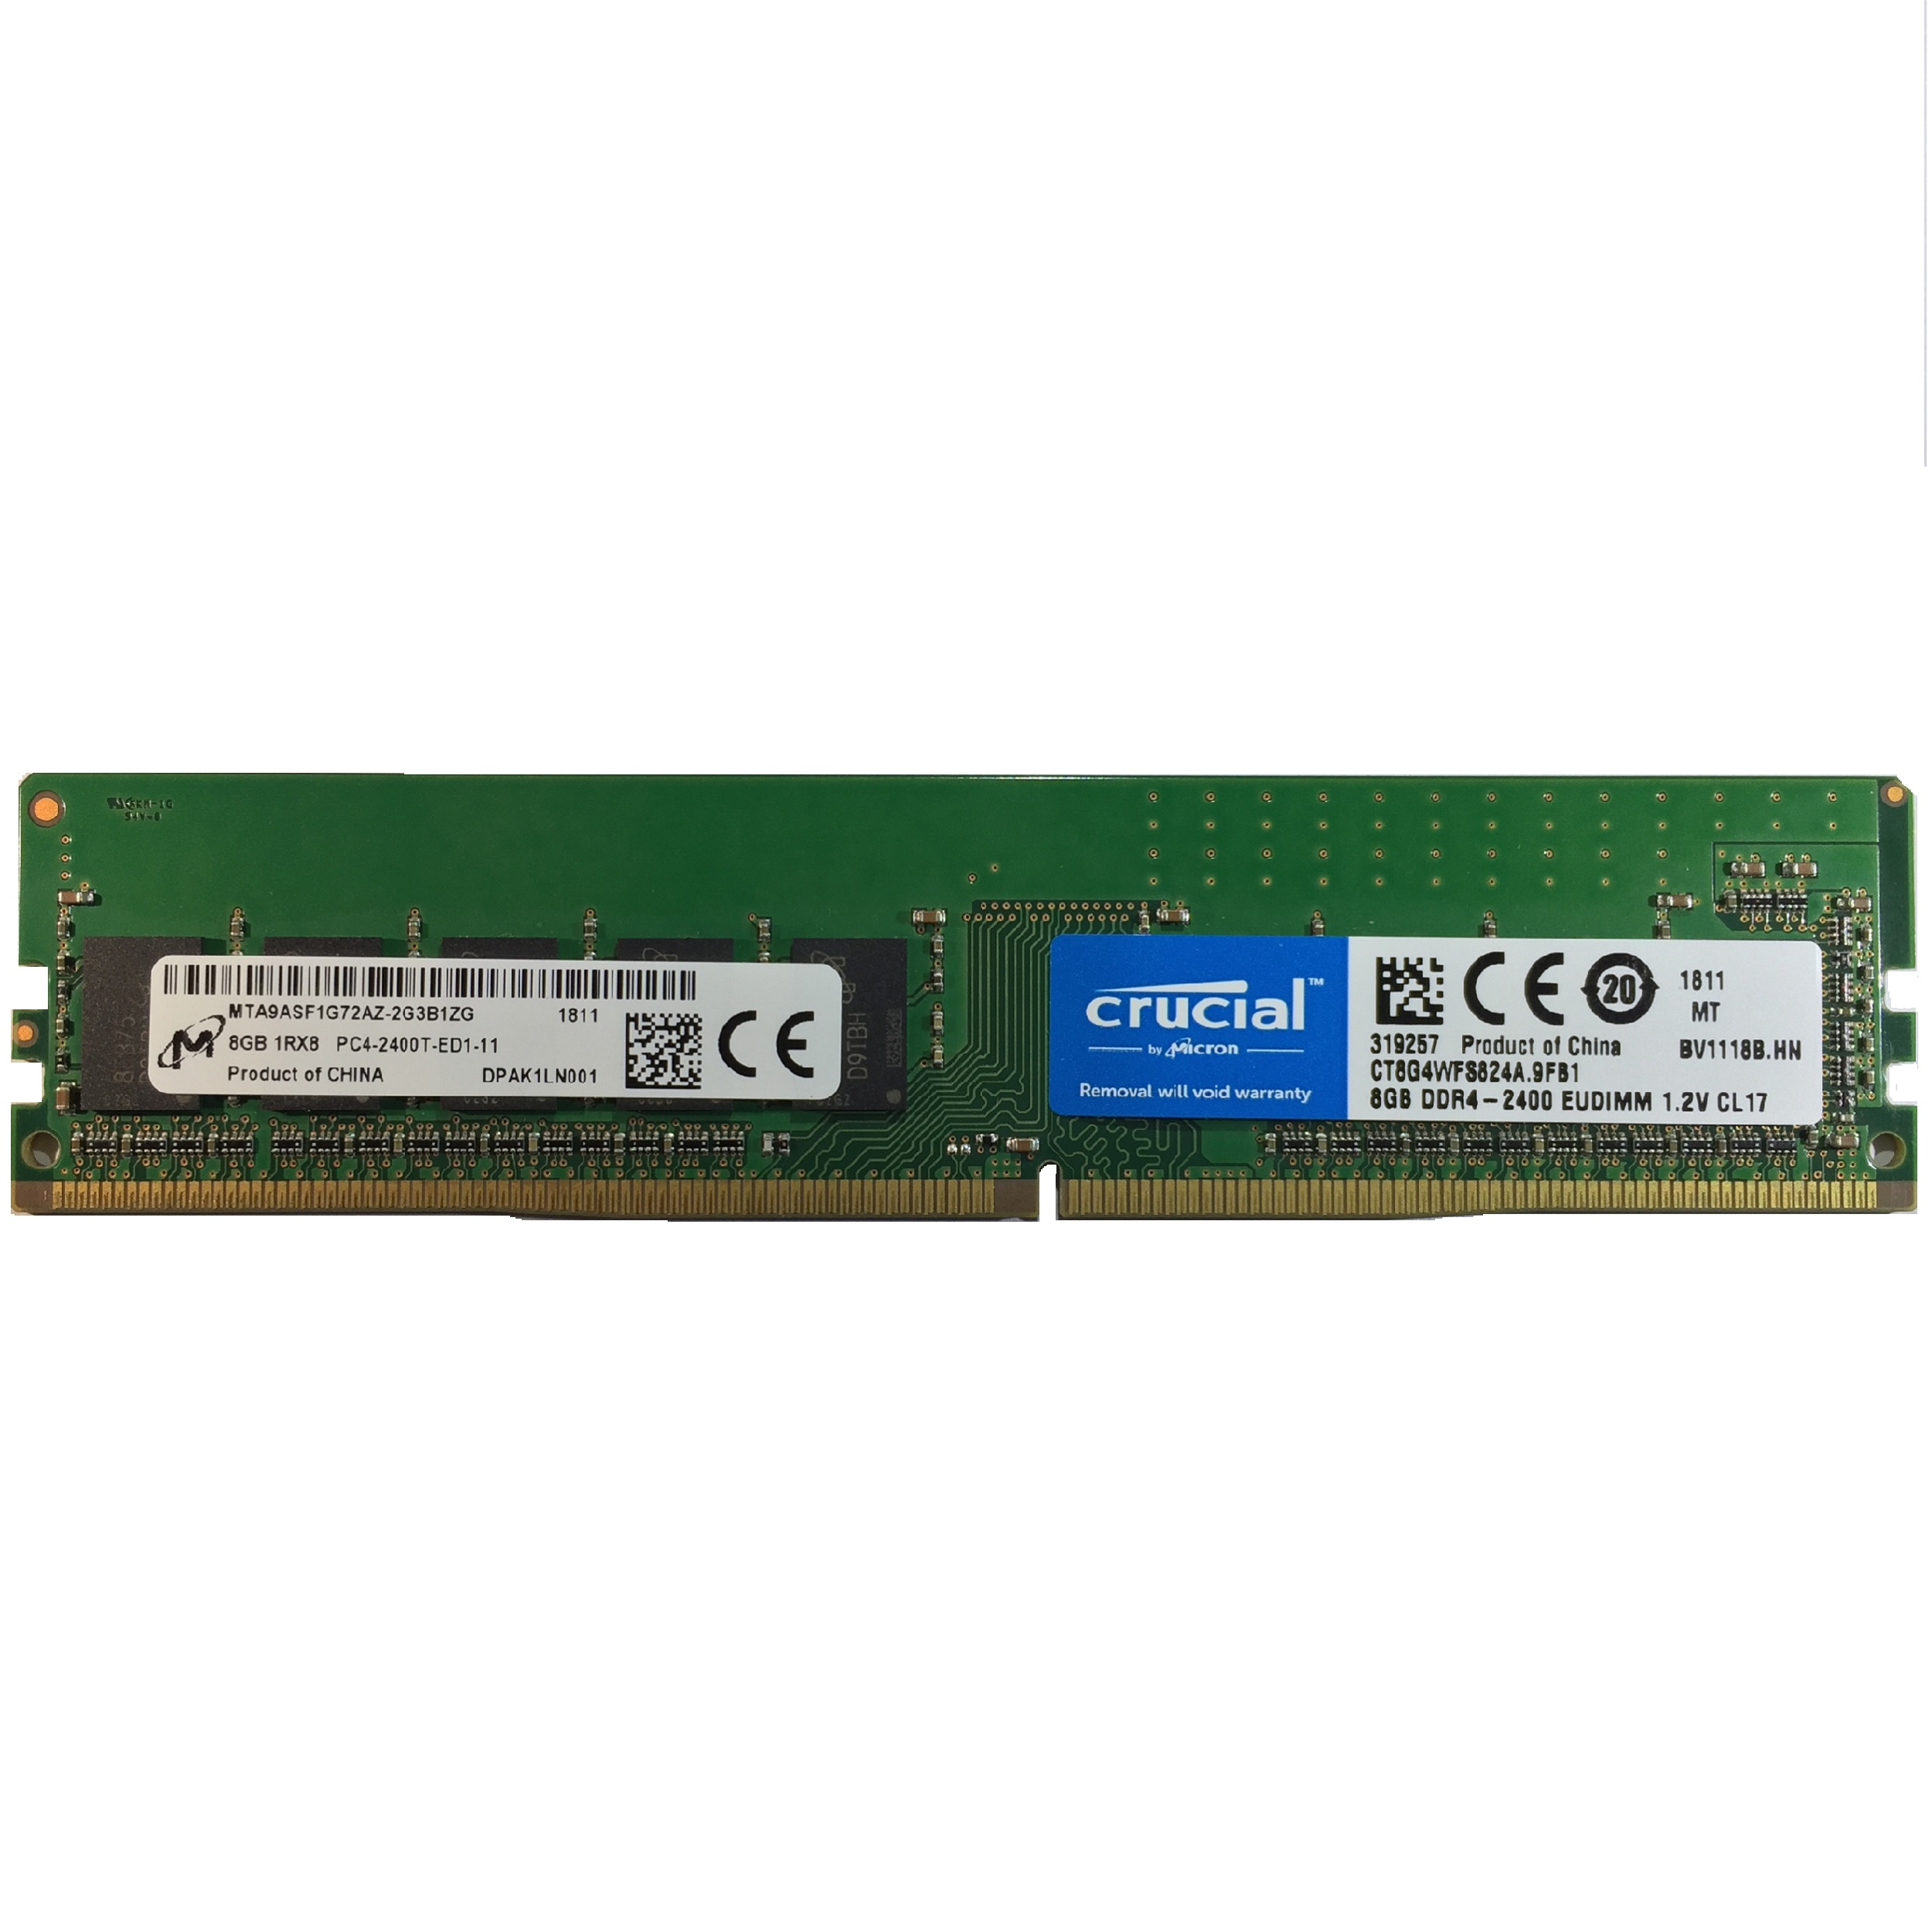 رم سرور DDR4 تک کاناله 2400 مگاهرتز CL17 کروشیال مدل CT8G4WFS824A ظرفیت 8 گیگابایت